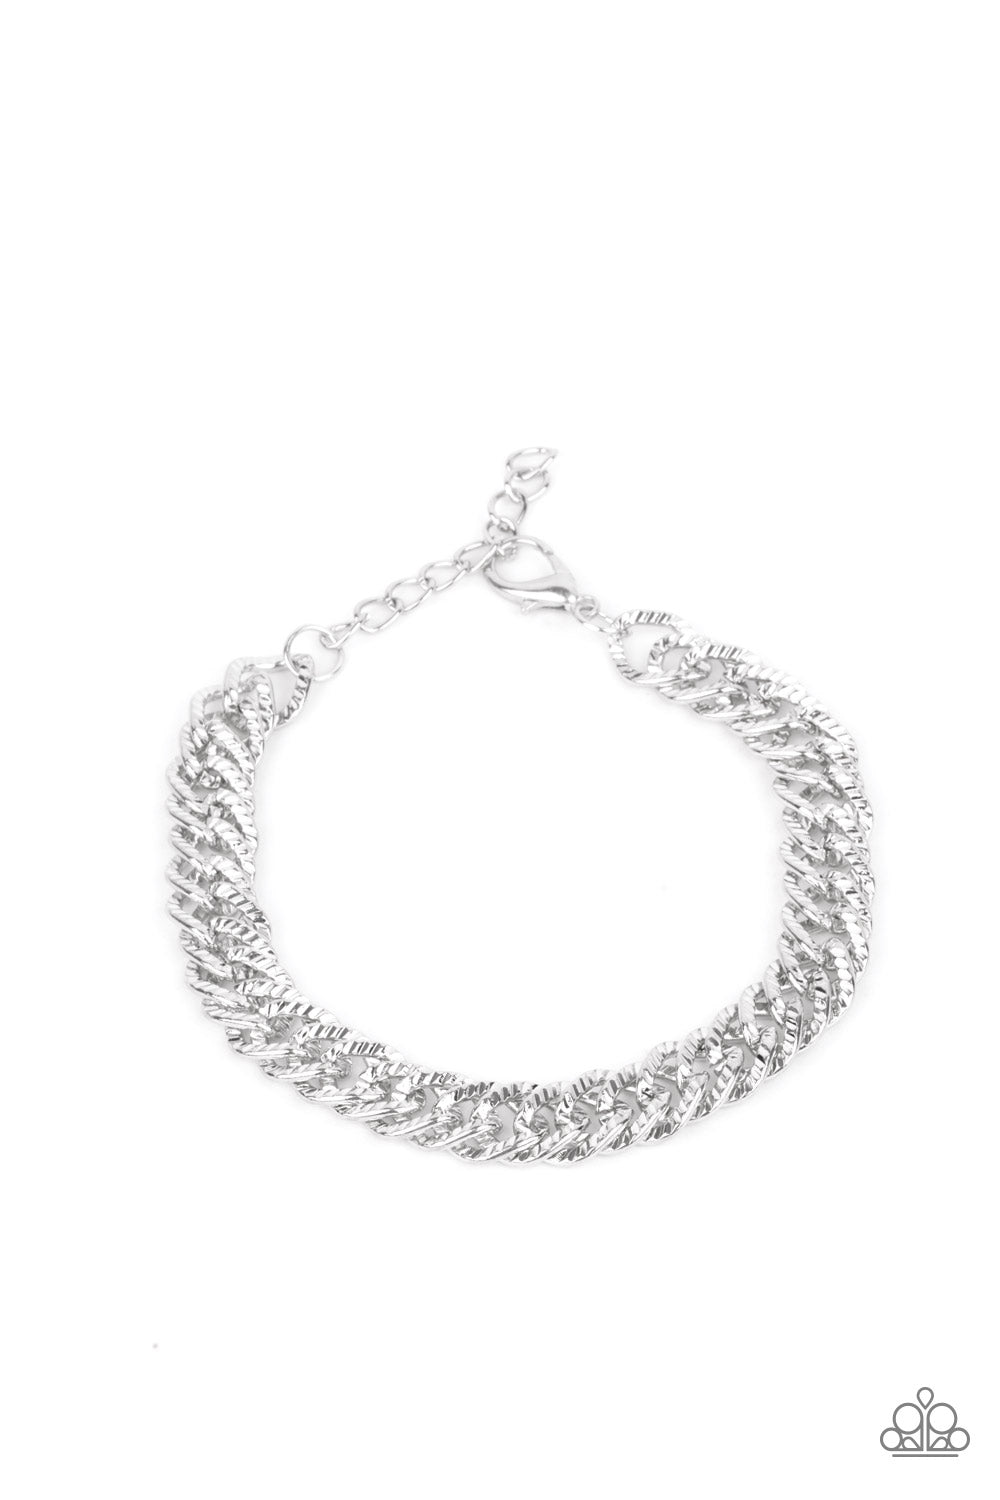 Urban Uppercut Silver Unisex Necklace & Bracelet Set - Paparazzi Accessories